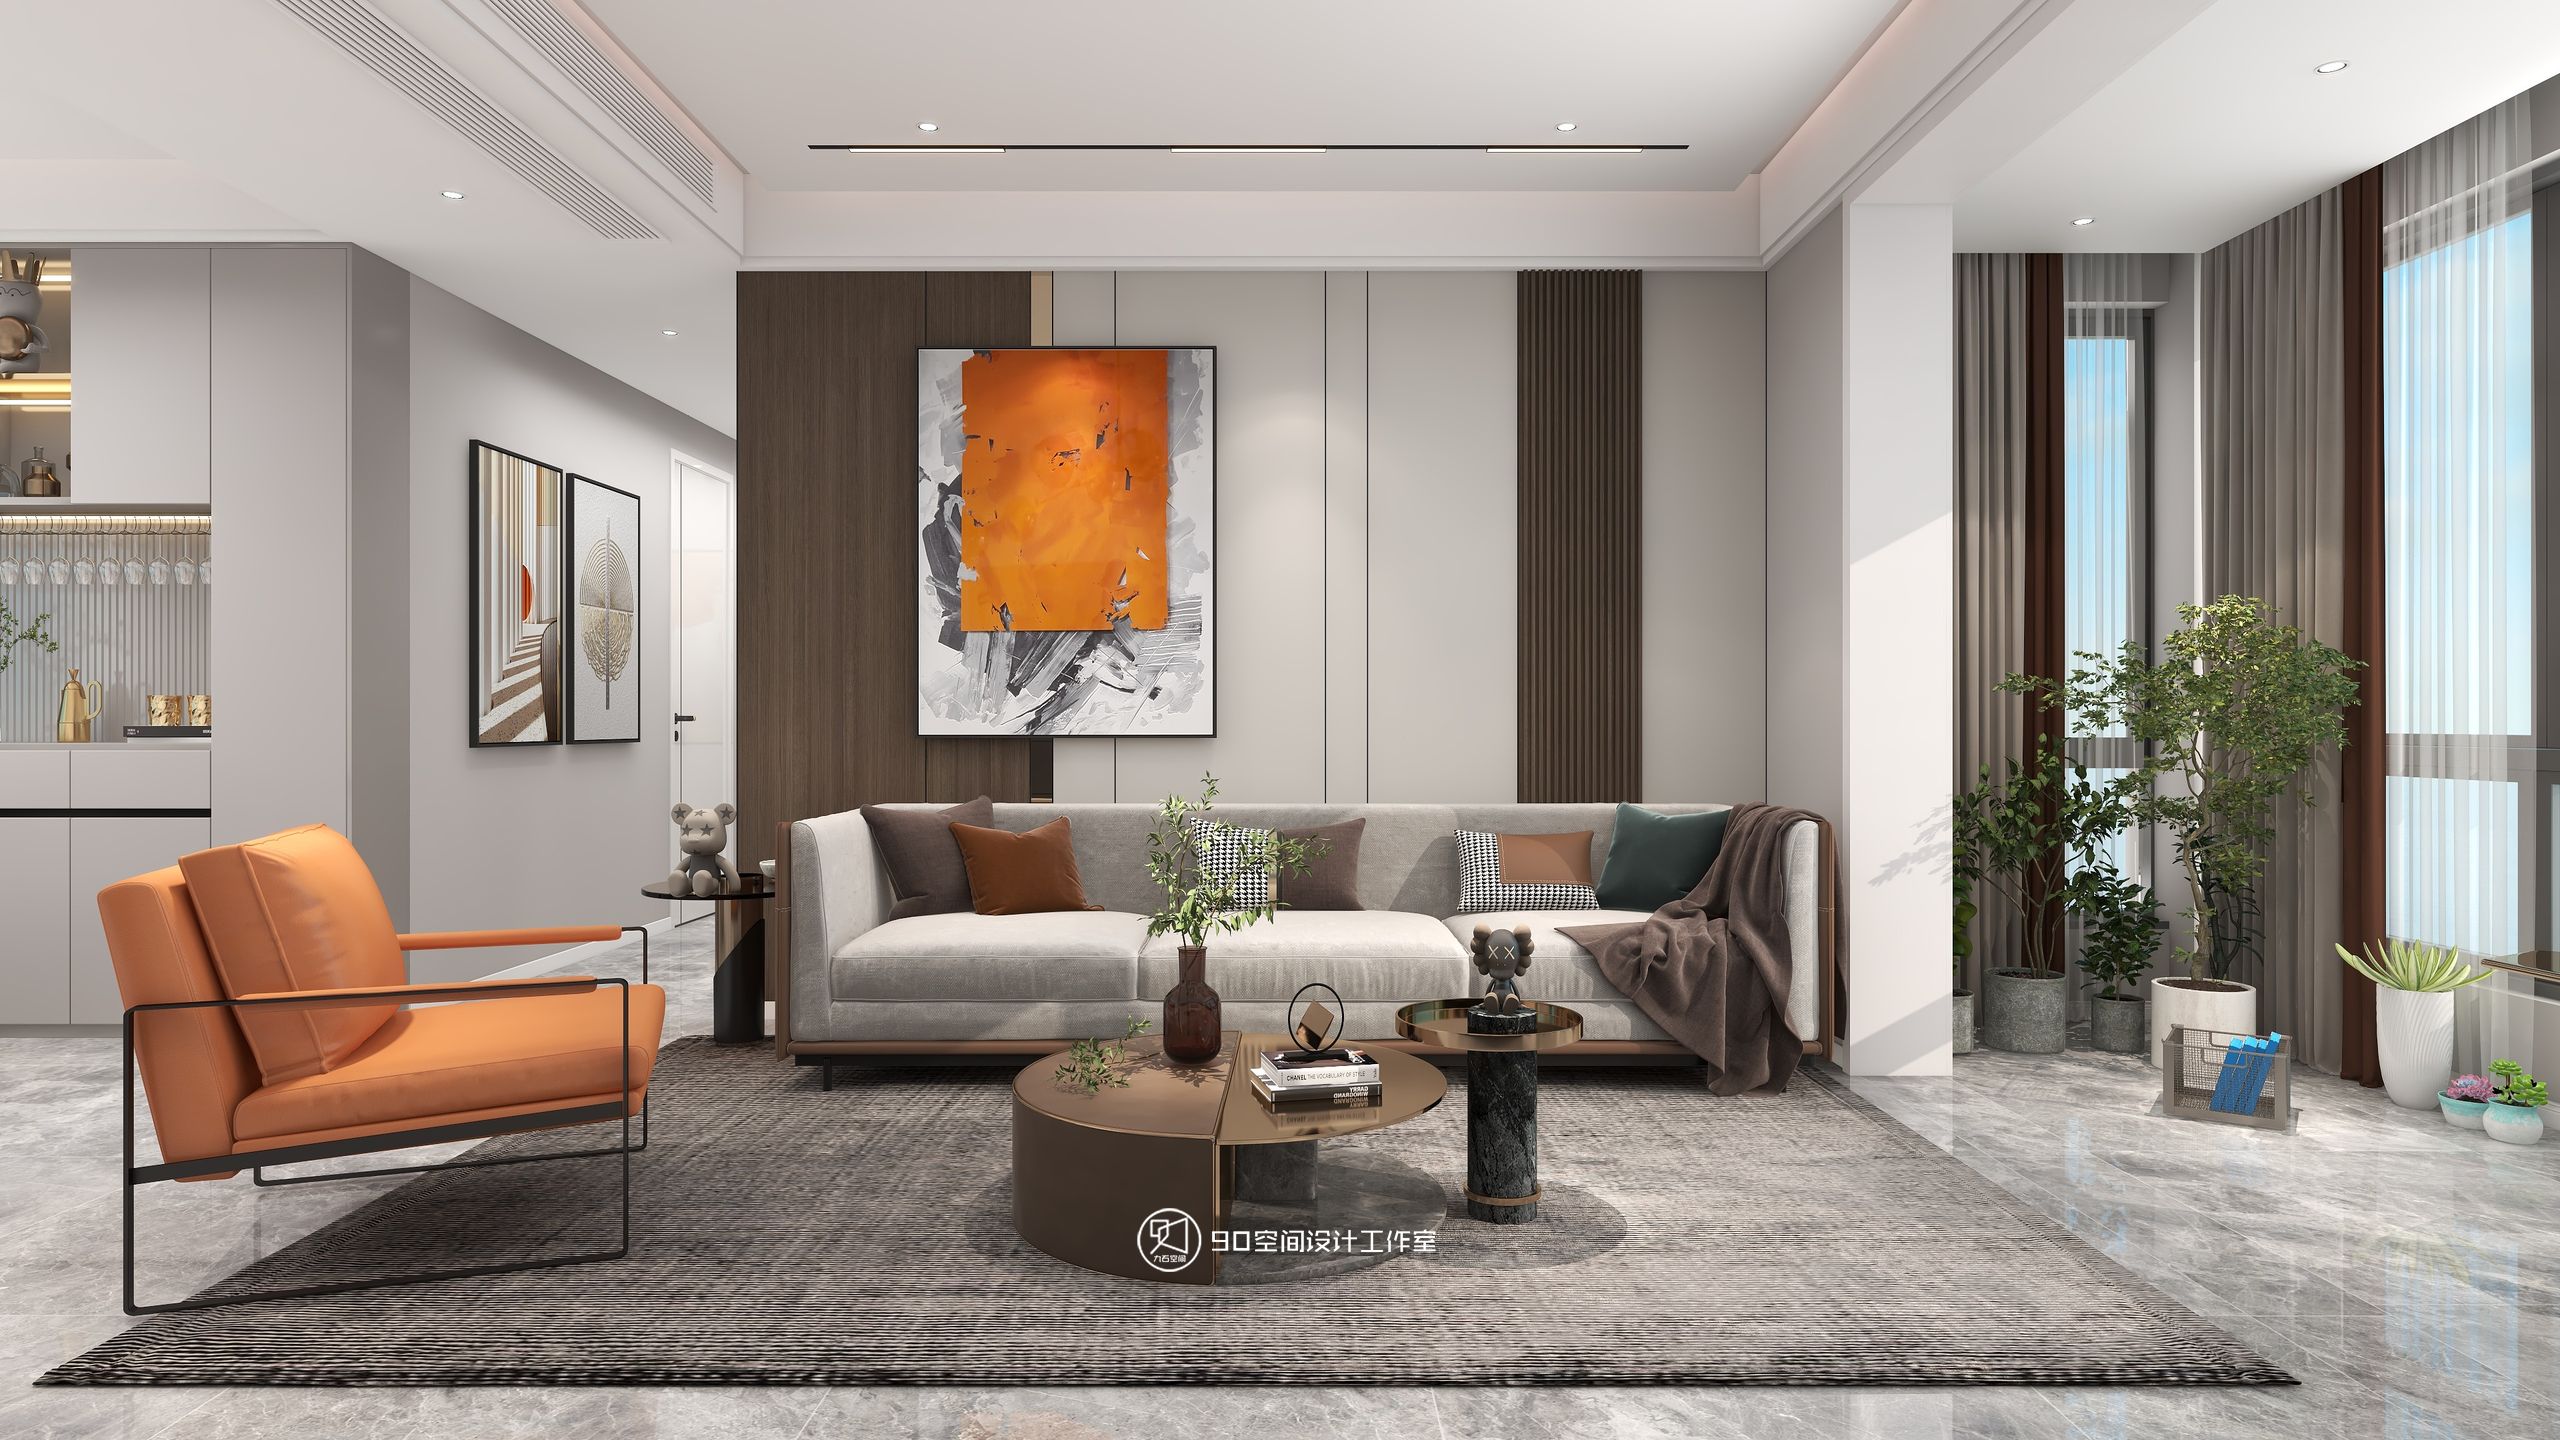 90空间设计∣131㎡现代风格丨有时候，家也需要一点温暖治愈的橙色系